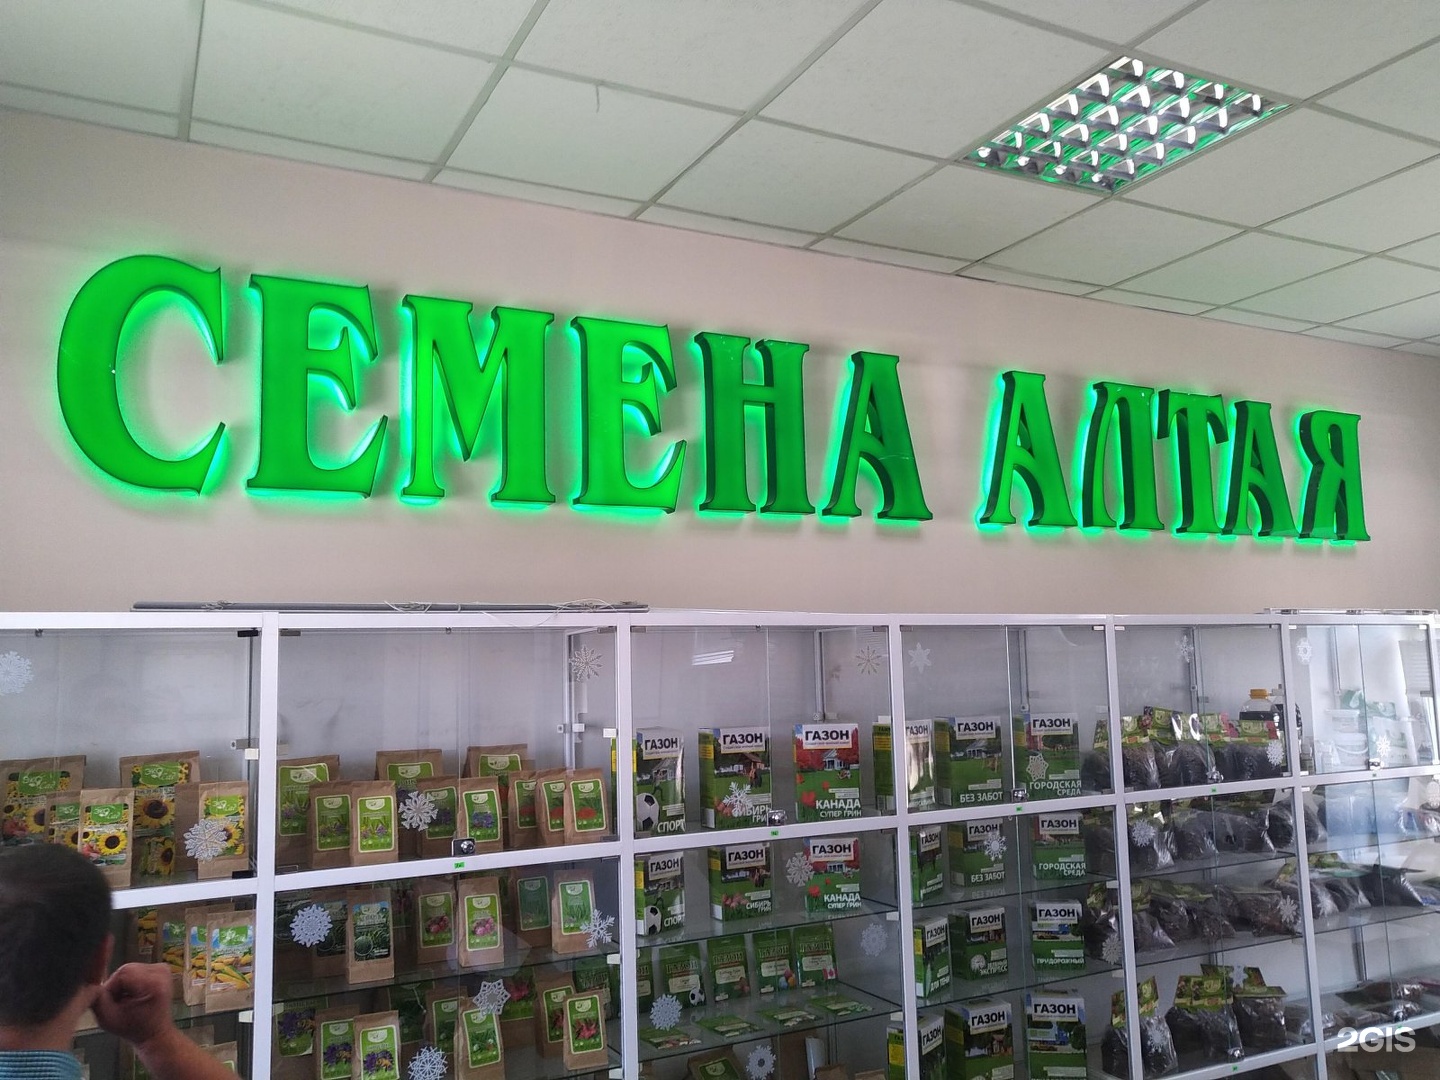 Где Можно Купить Алтайские Семена